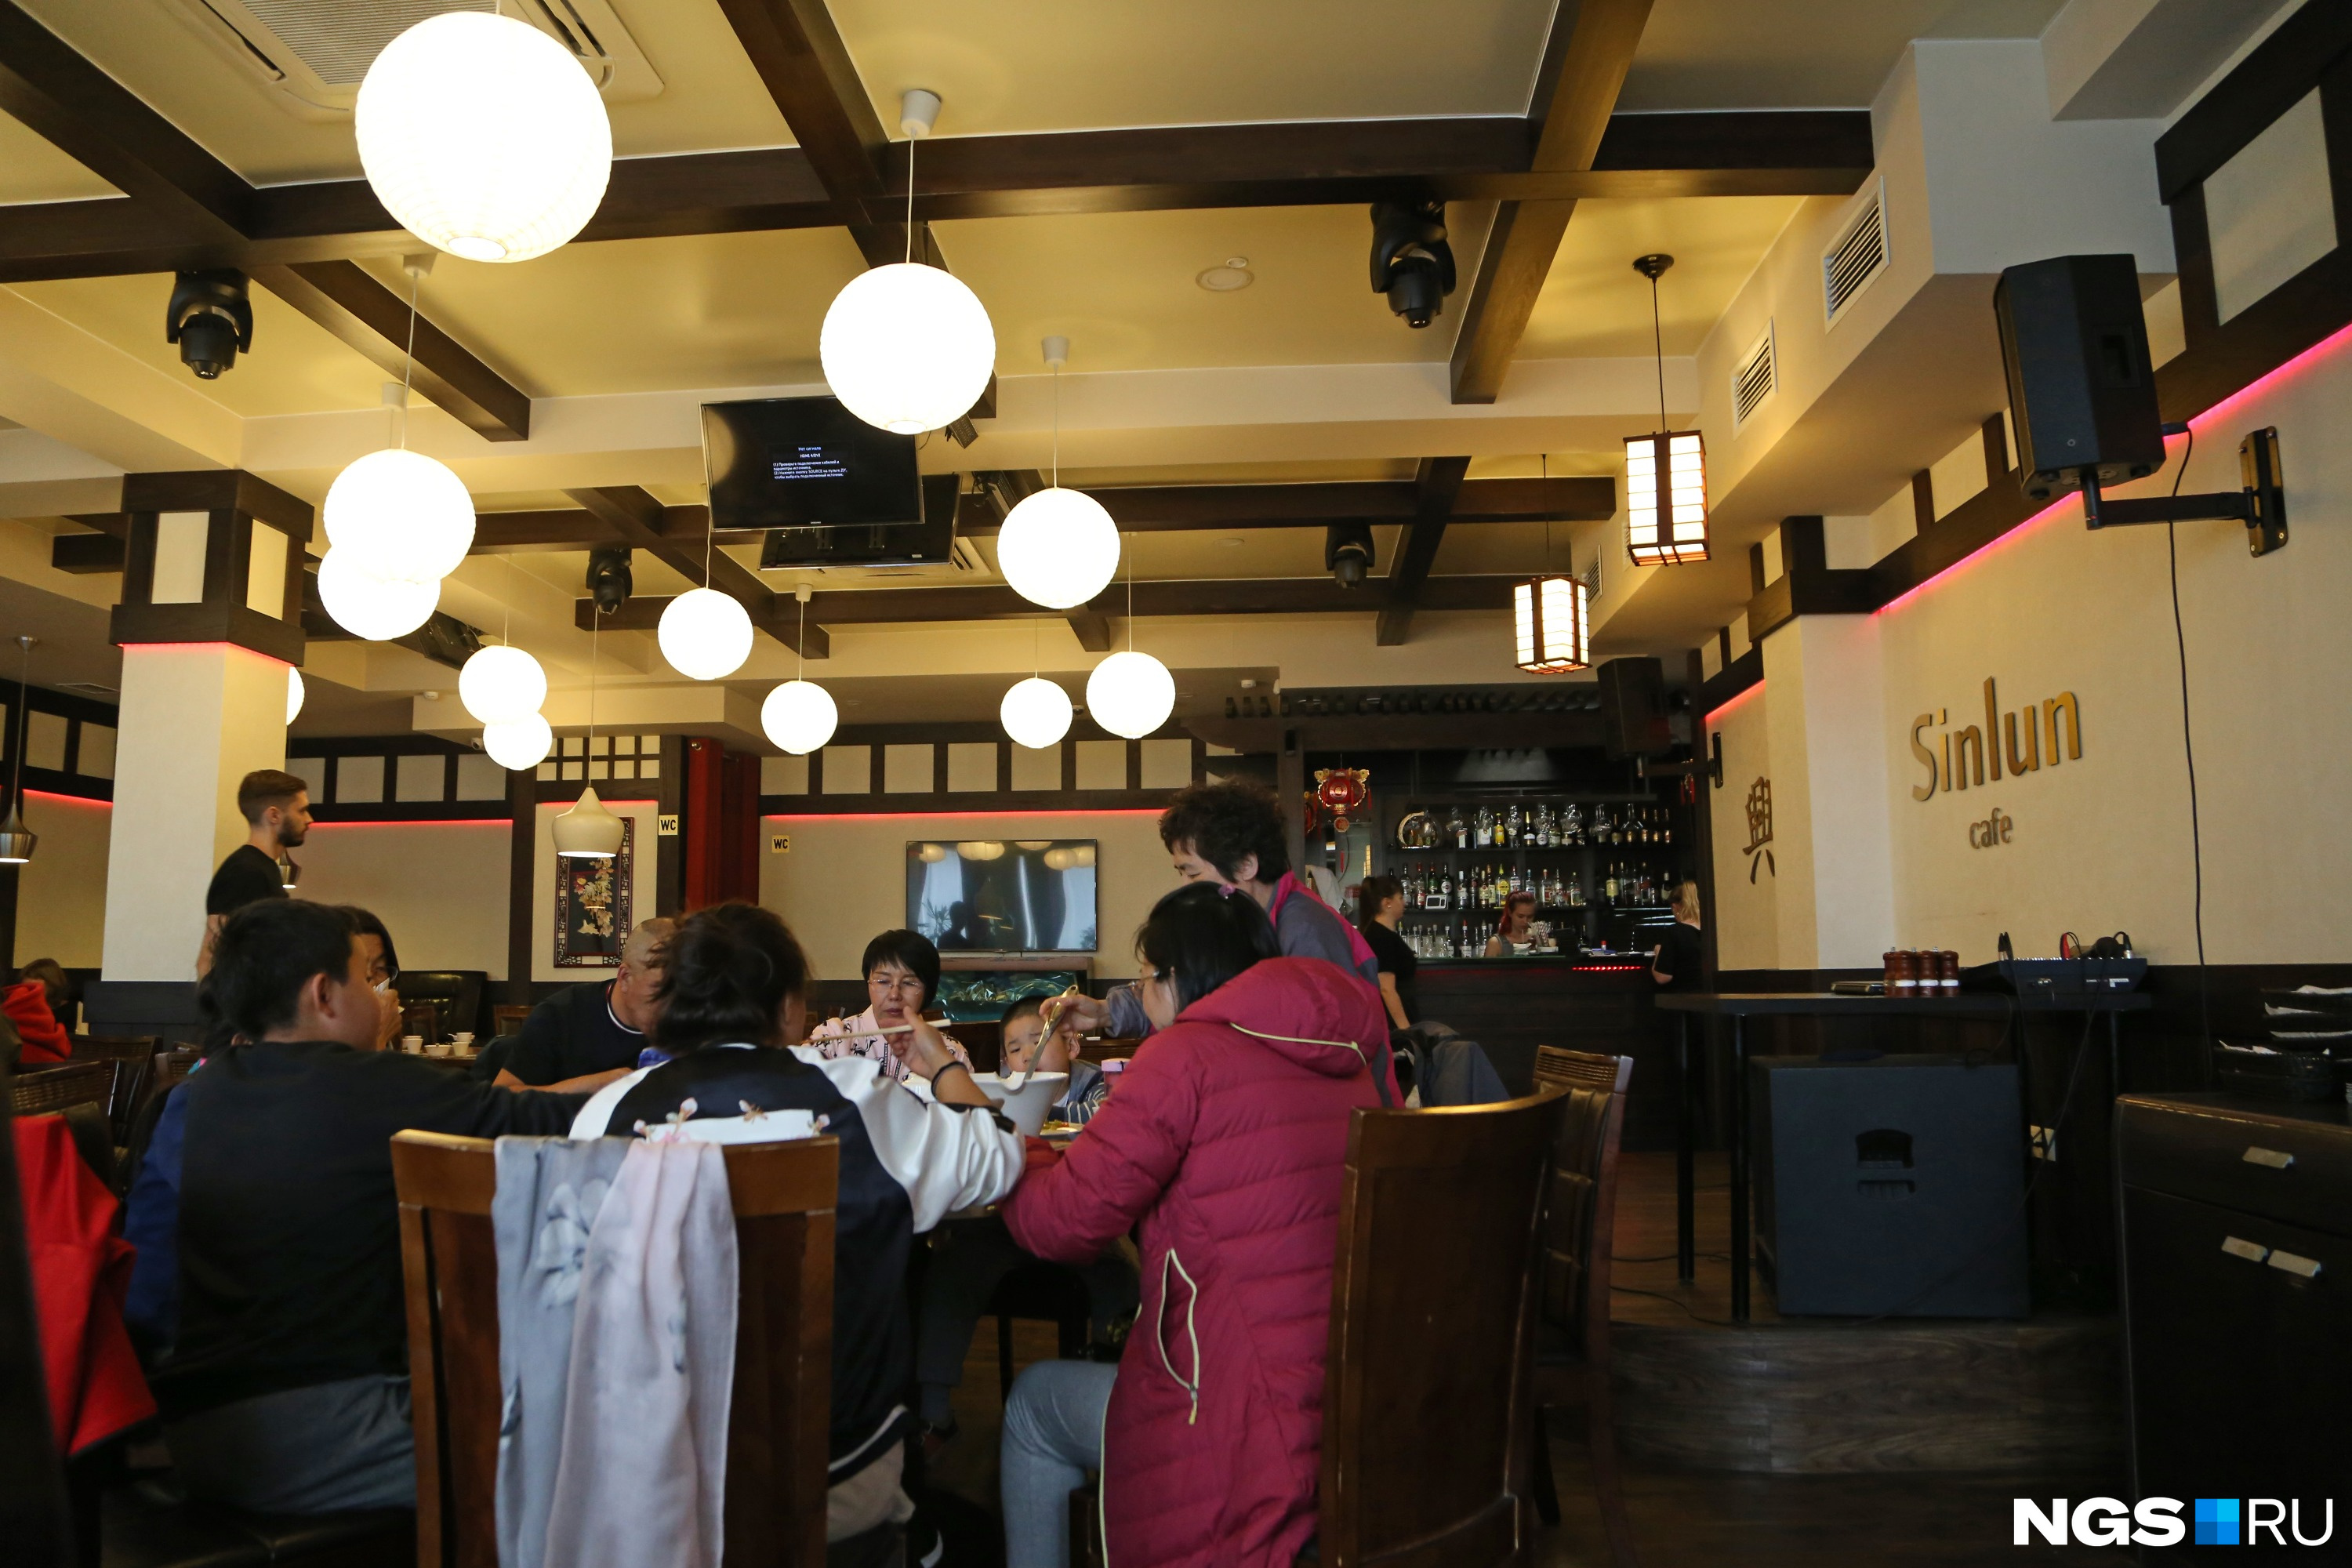 Туристы из Китая на обеде в кафе Sinlun